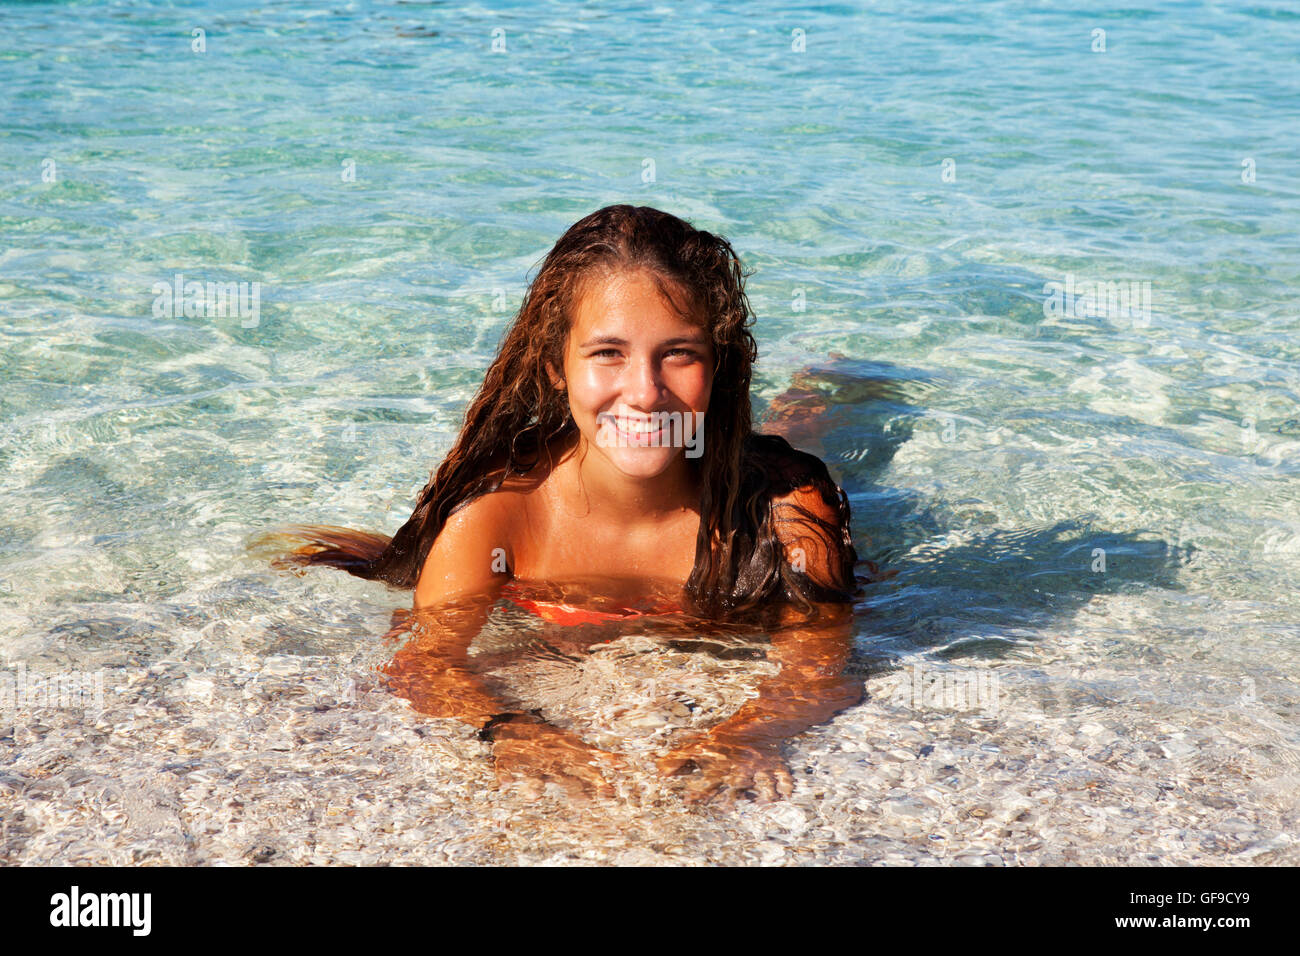 Jeune adolescent bronzé tourist baignade dans les eaux limpides de la mer Méditerranée à la plage d'Antisamos, l'île de Céphalonie, Grèce Banque D'Images